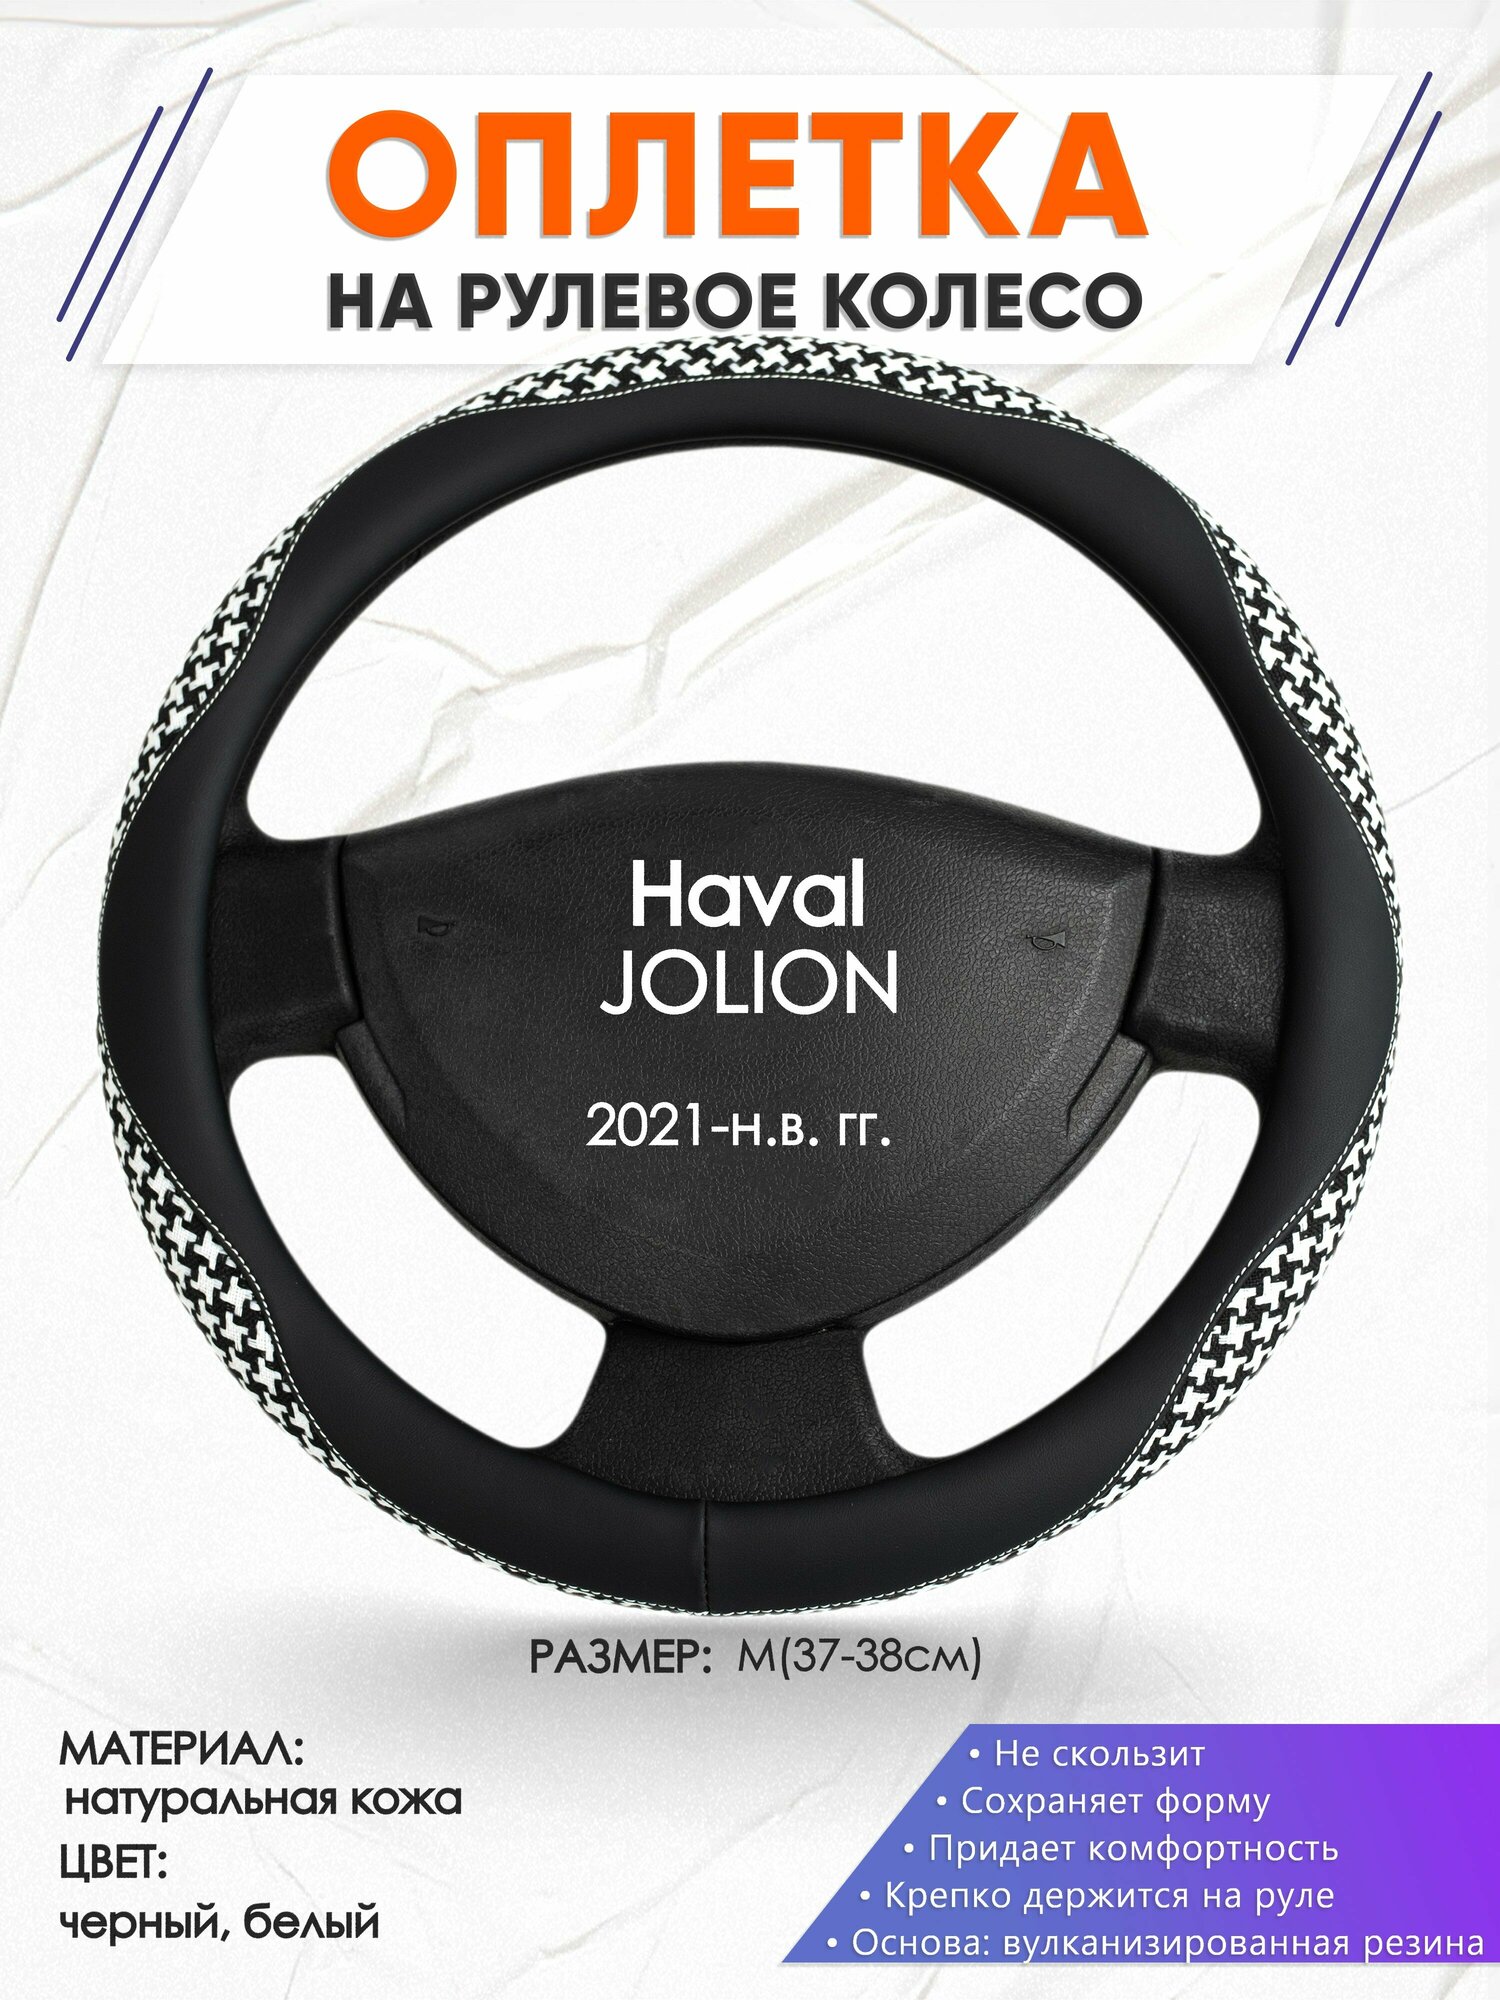 Оплетка наруль для Haval JOLION(Хавал Джолион) 2021-н. в. годов выпуска, размер M(37-38см), Натуральная кожа 21